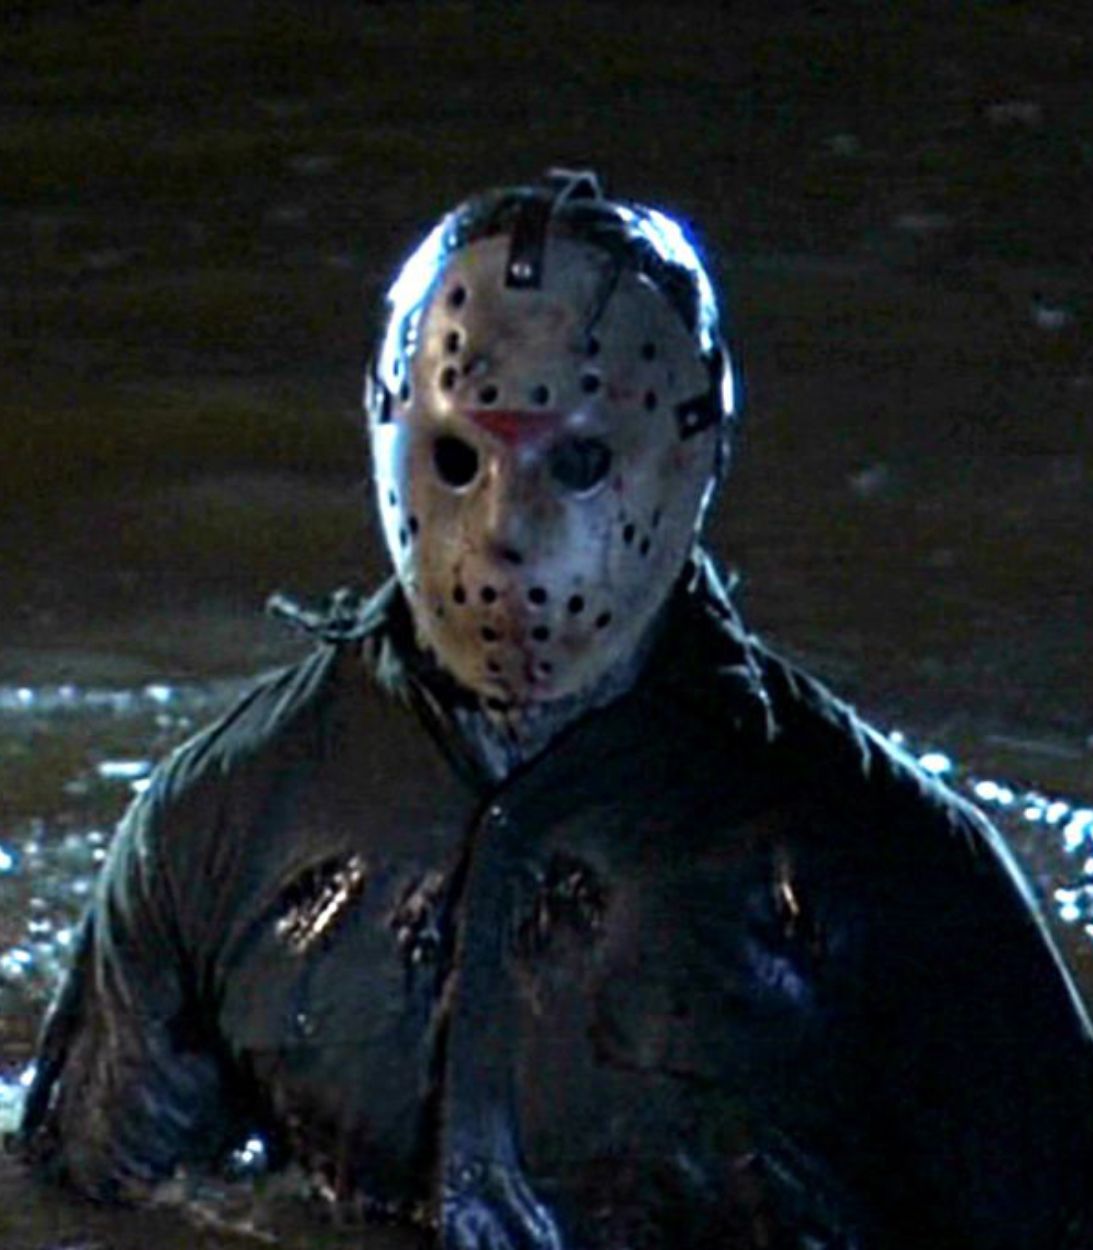 Джейсон постоянно использовал Хрустальное Озеро в качестве основного места для убийств в фильме 'Пятница 13'.